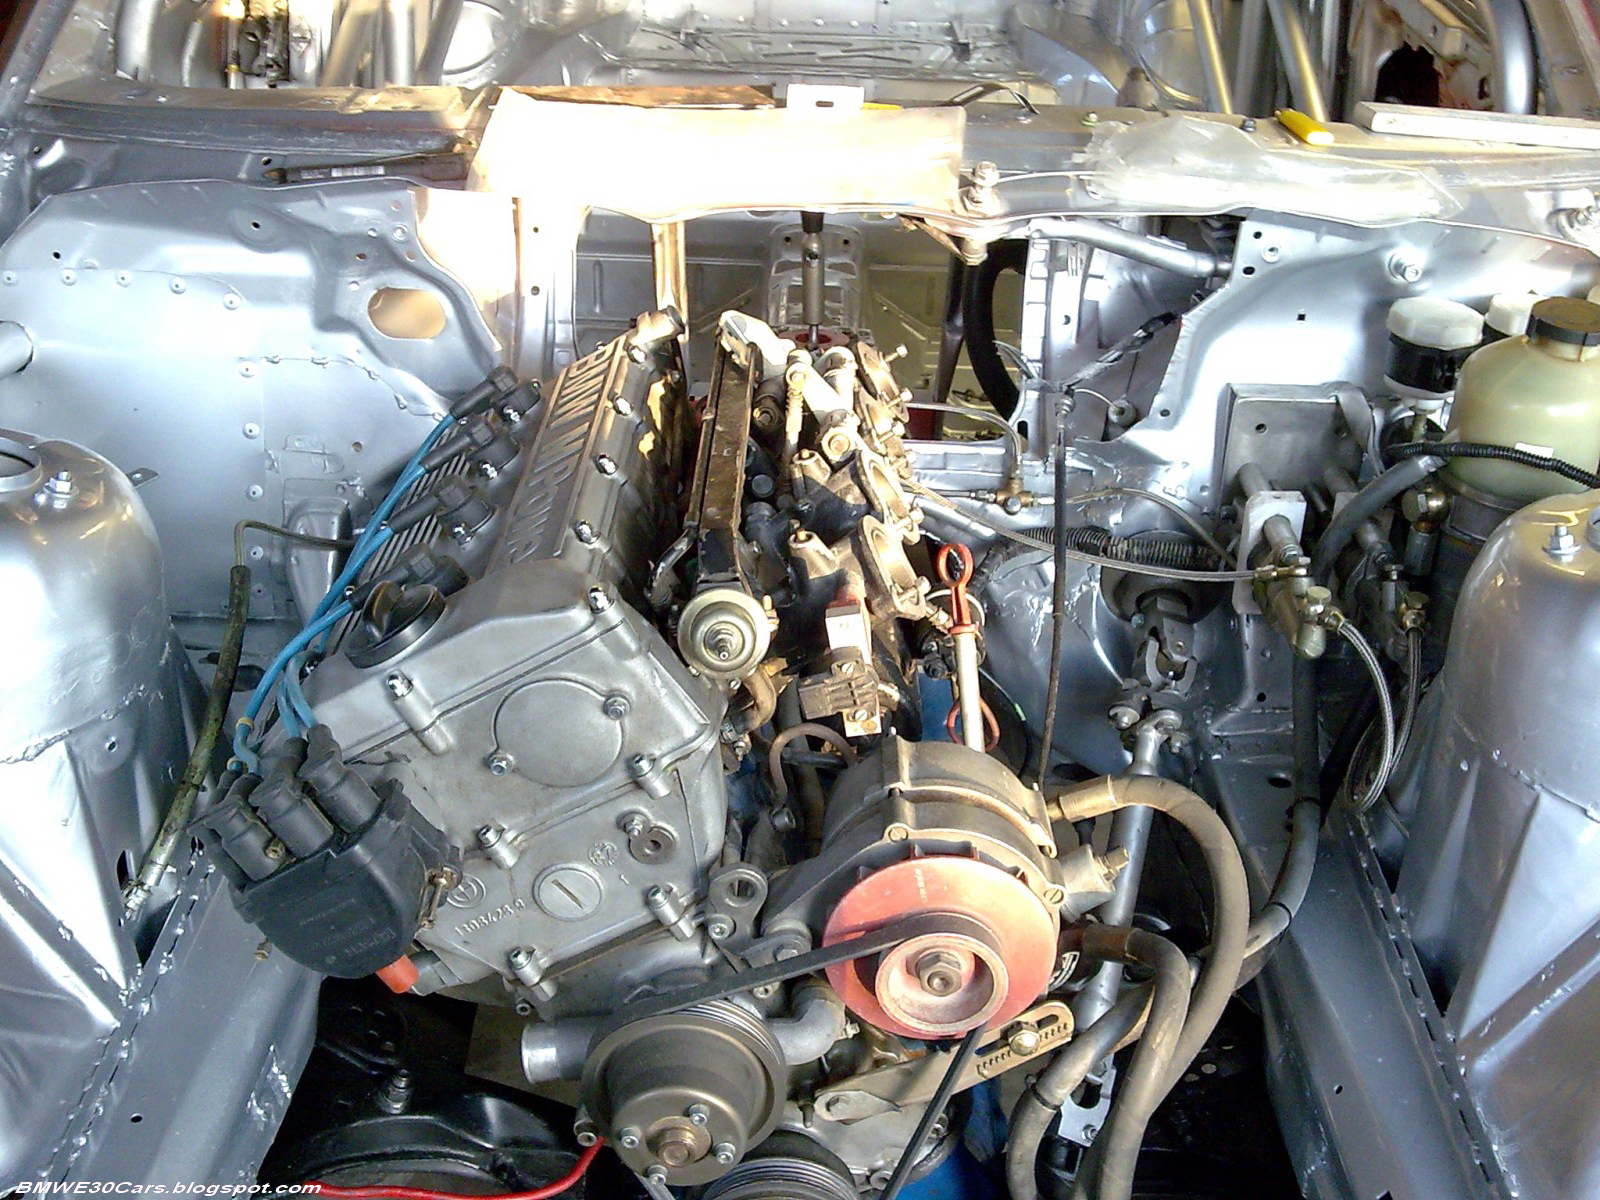 Двигатель 14 б. S14b23 двигатель. S14 BMW двигатель. S14 engine. МП-14 двигатель.